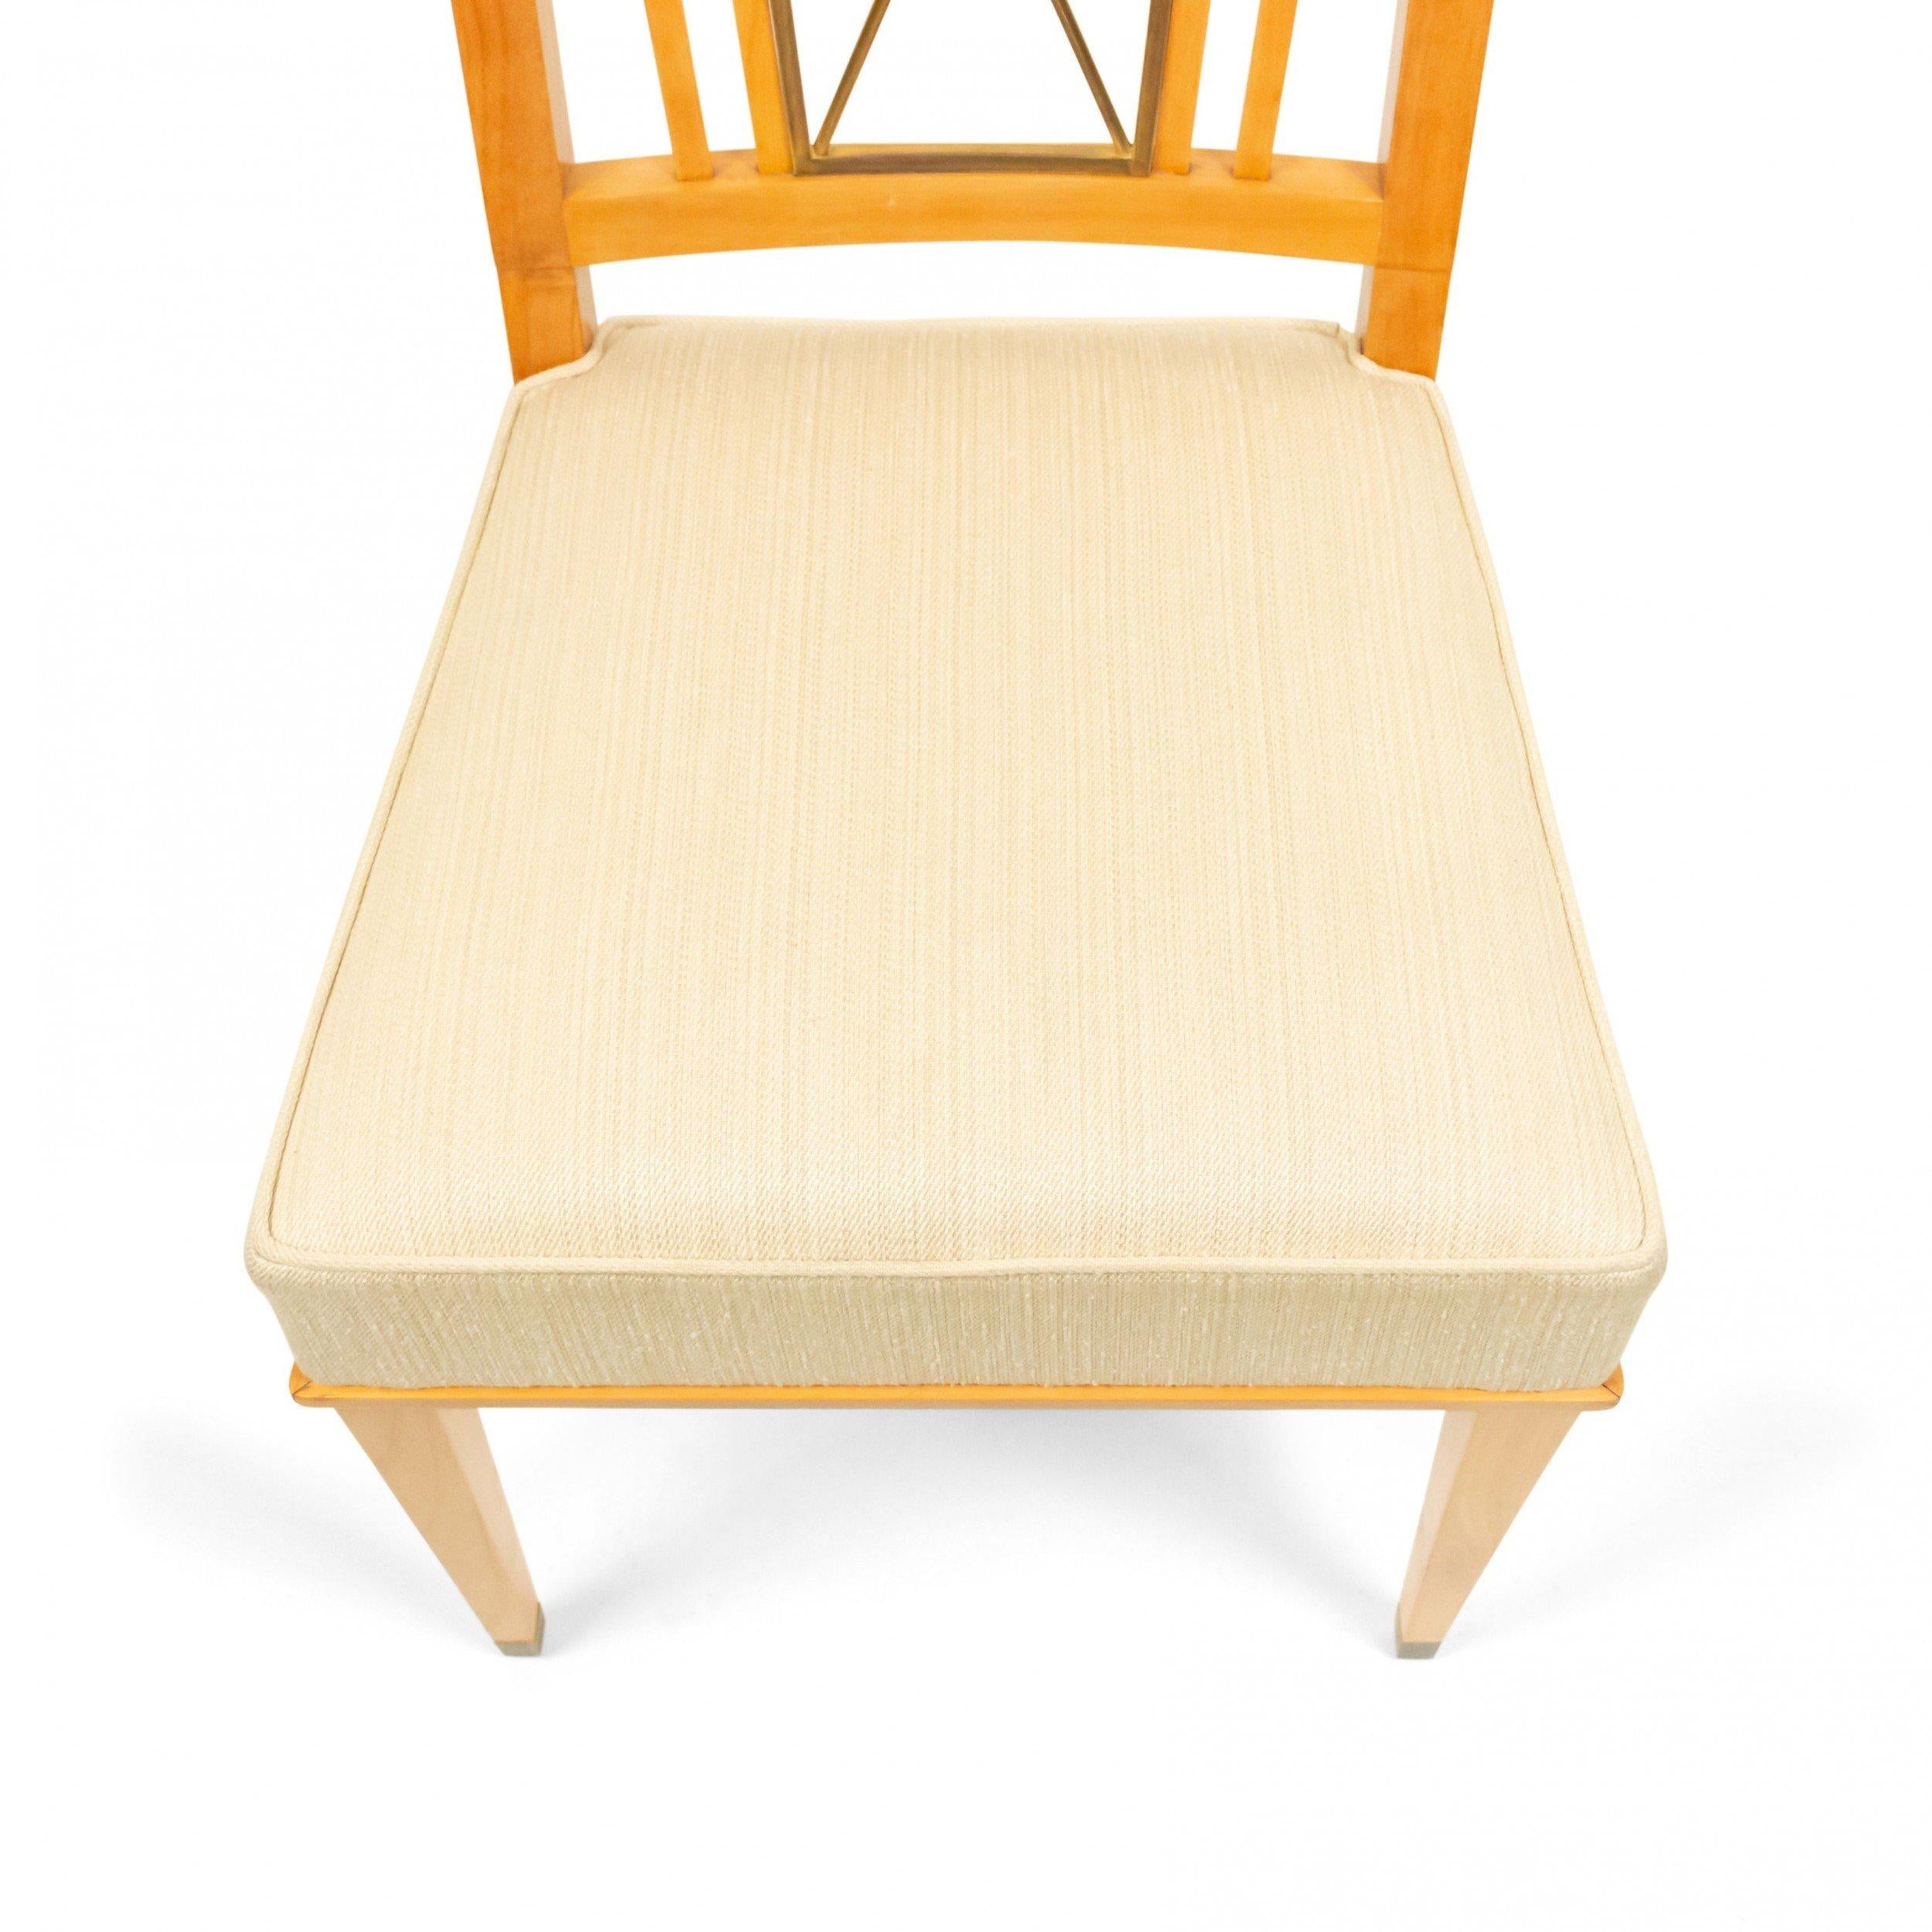 Ensemble de 8 chaises d'appoint en laiton et érable de style français des années 1940, avec dossiers ouverts en forme de X et sièges tapissés de soie beige (façon JACQUES ADNET) (PRIX DE L'ENSEMBLE).
 